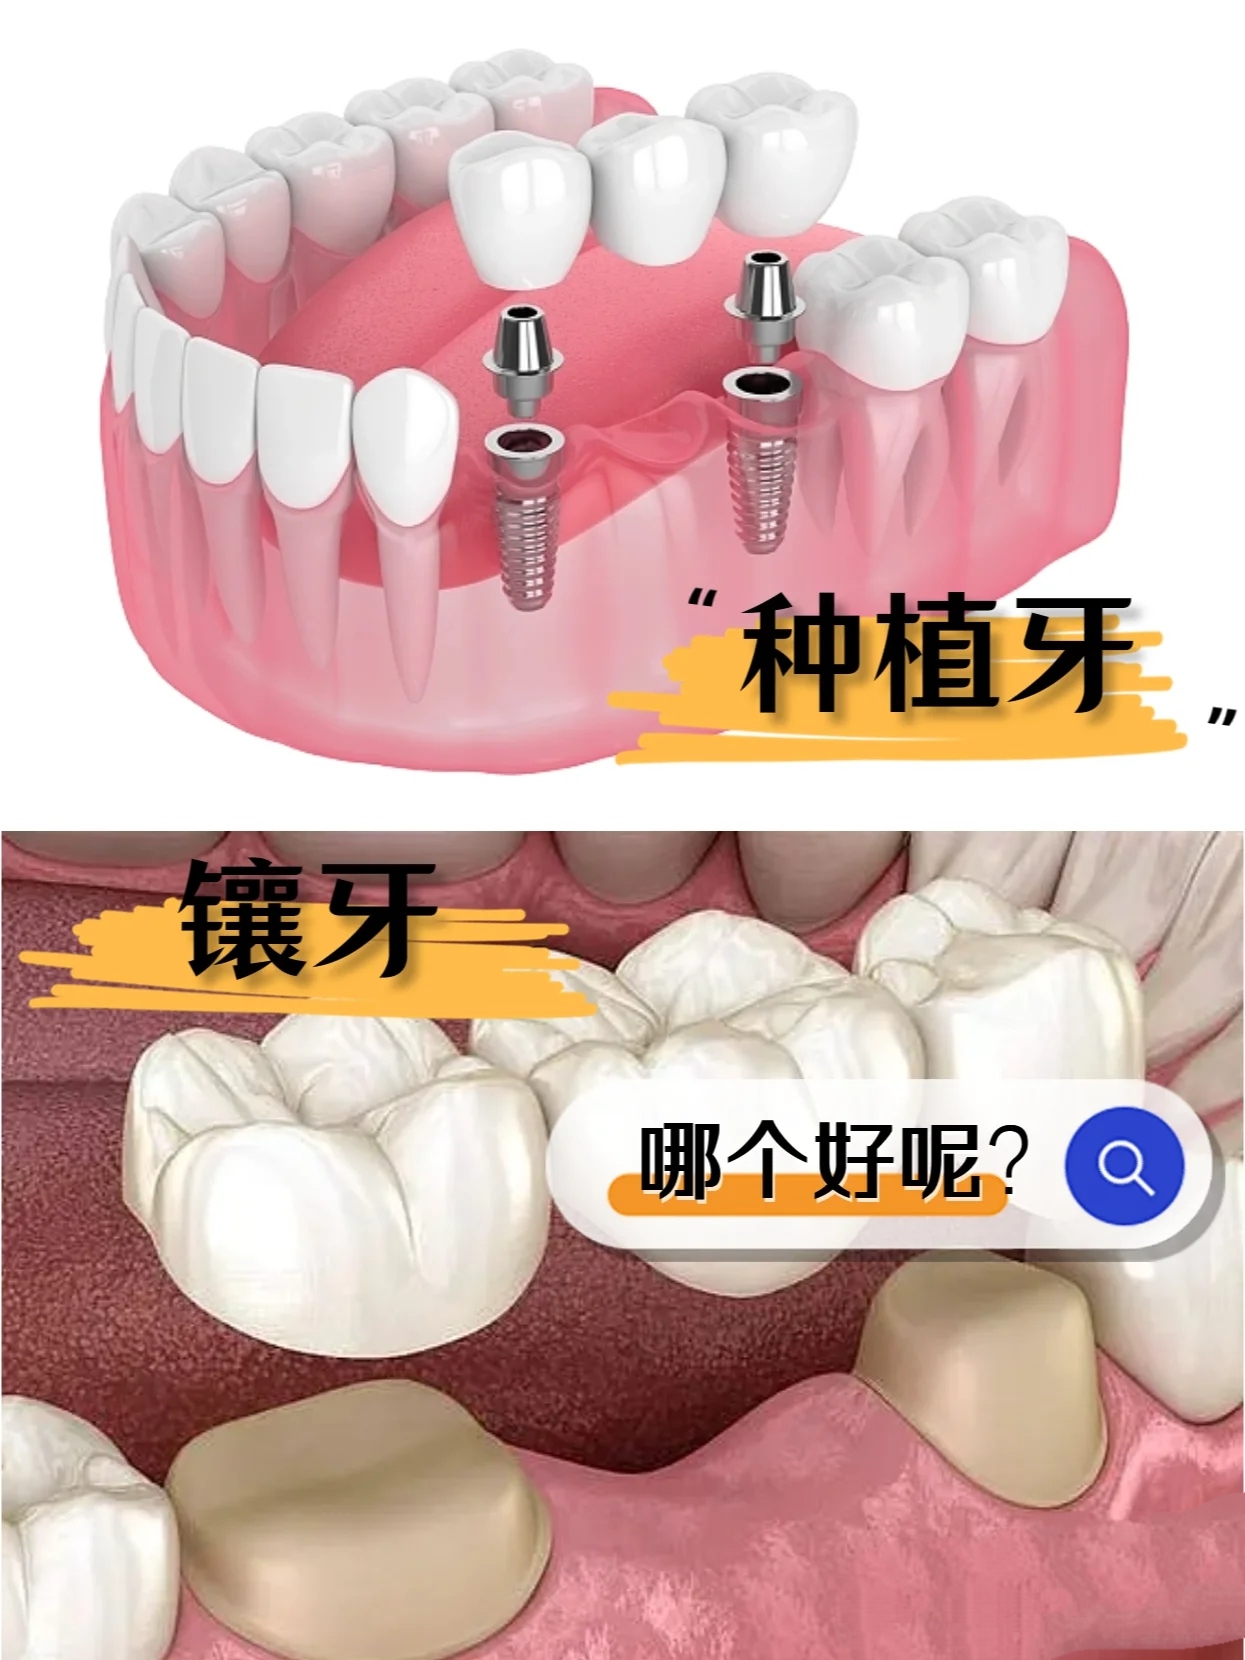 HOTBEST Pair Teeth Veneers Perfect Smile Upper And Lower Veneers Teeth ...